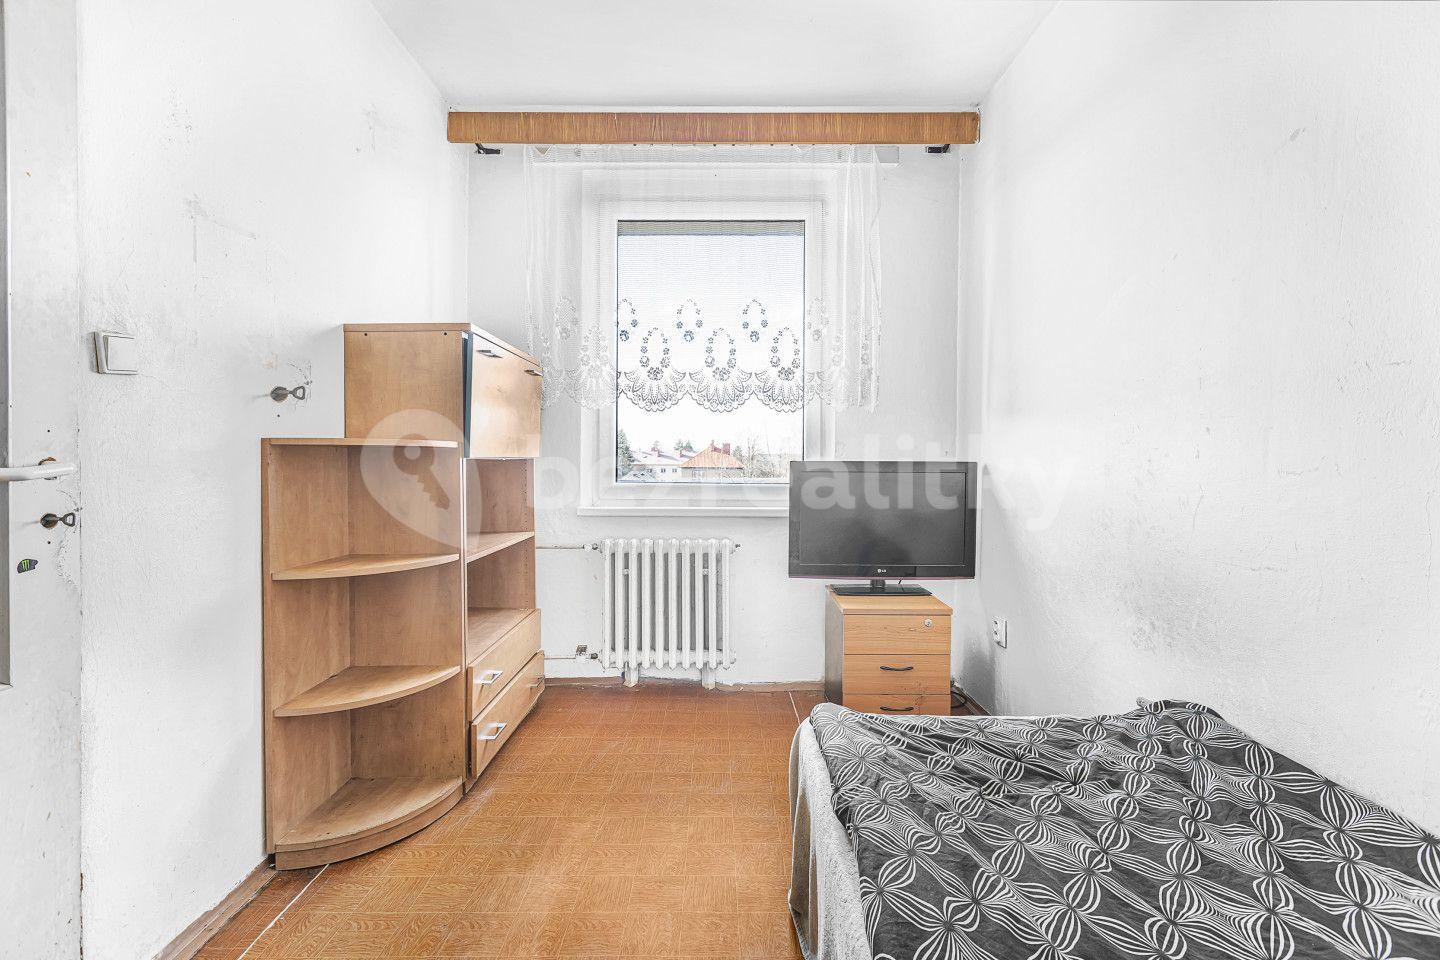 4 bedroom flat for sale, 73 m², Solnická, Kostelec nad Orlicí, Královéhradecký Region